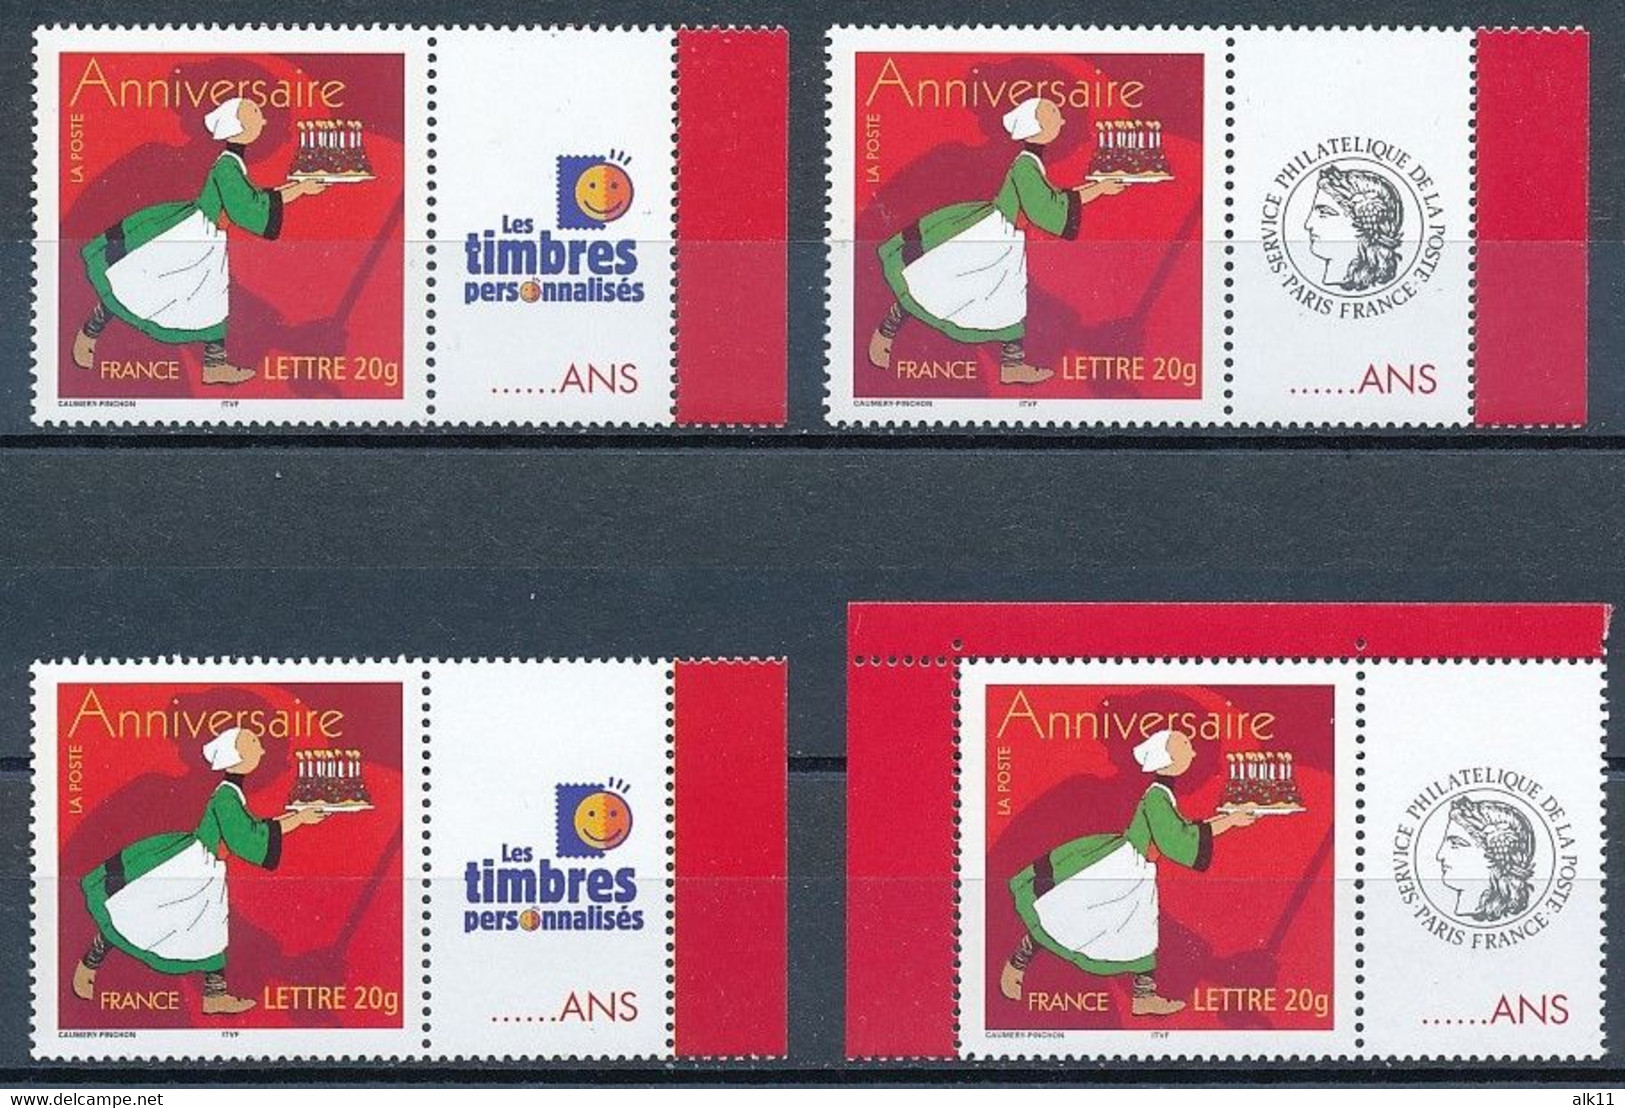 France 2005 - 3778A 4x Timbre Anniversaire Personnalisé Avec Logo Cérès Et Les Timbres Personnalisés Bécassine - Neuf - Unused Stamps